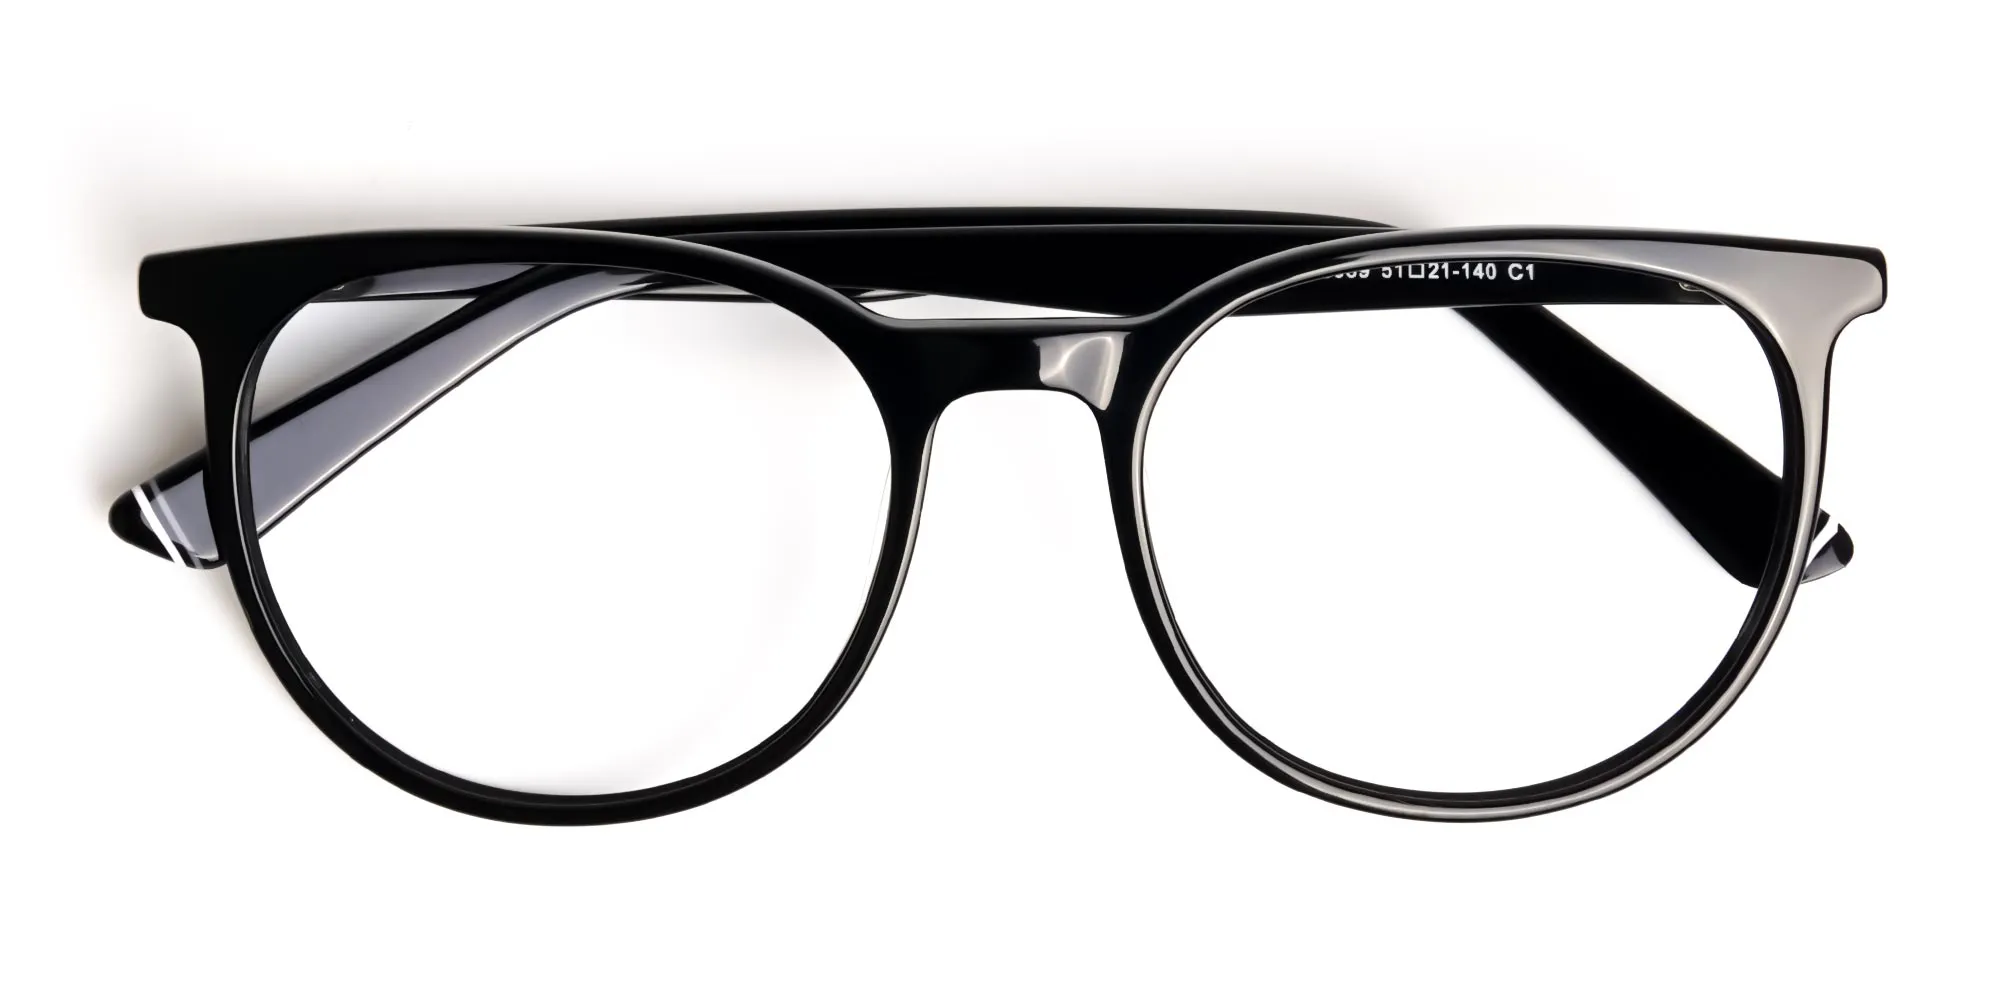 Black-full-rim-round-glasses-frames-2